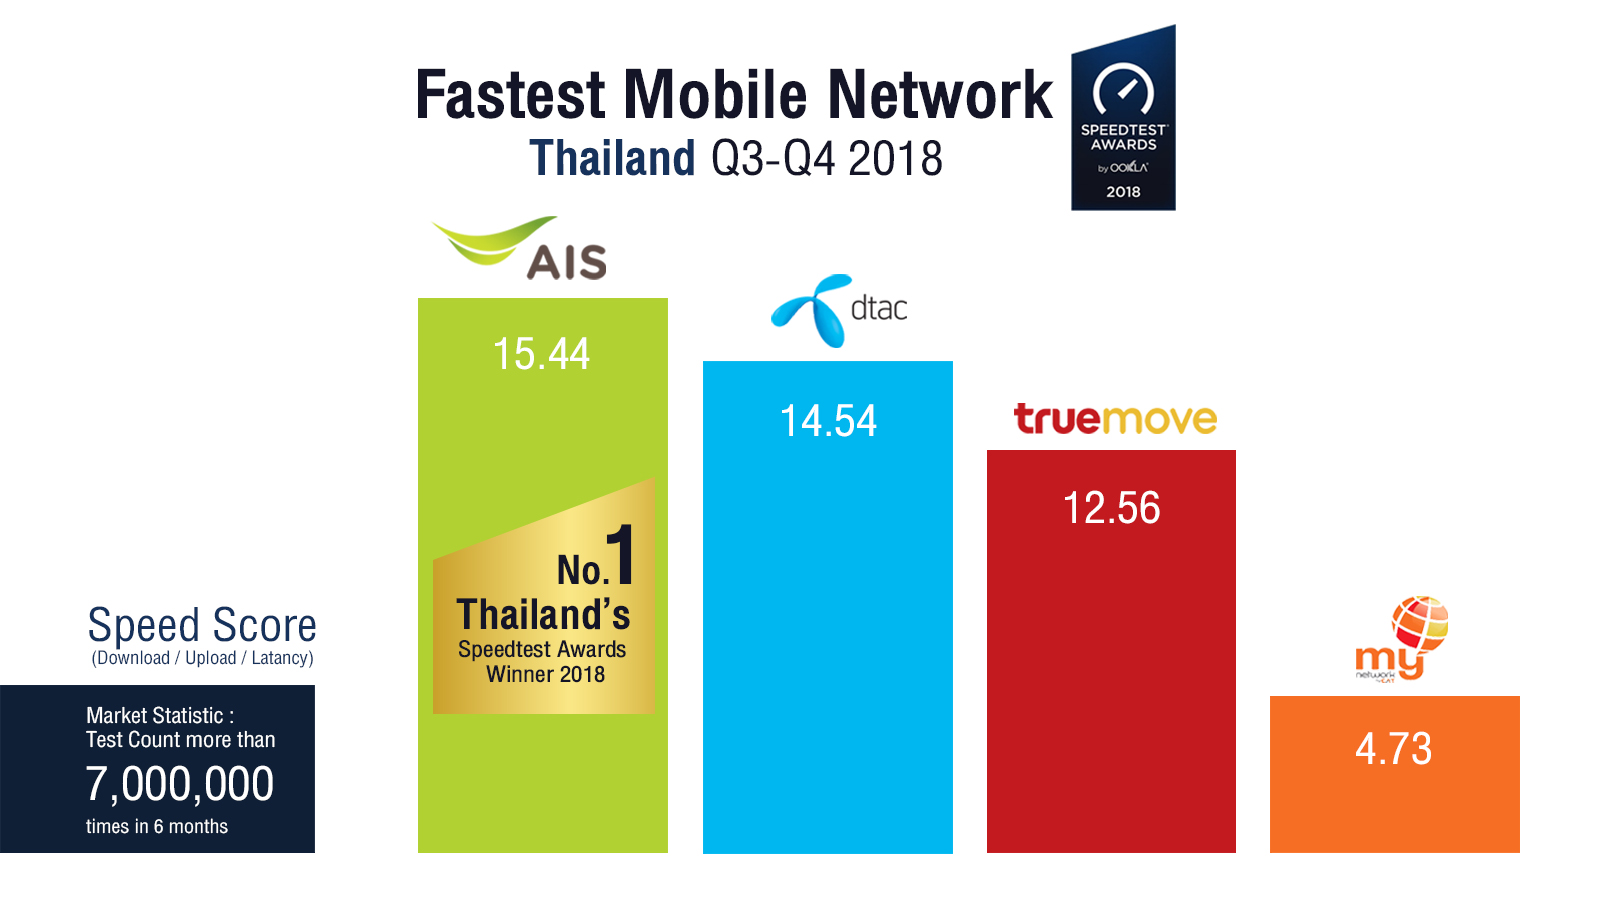 AIS ขึ้นอันดับ 1 เครือข่ายมือถือที่เร็วที่สุดในไทย 4 ปีซ้อนจาก Ookla